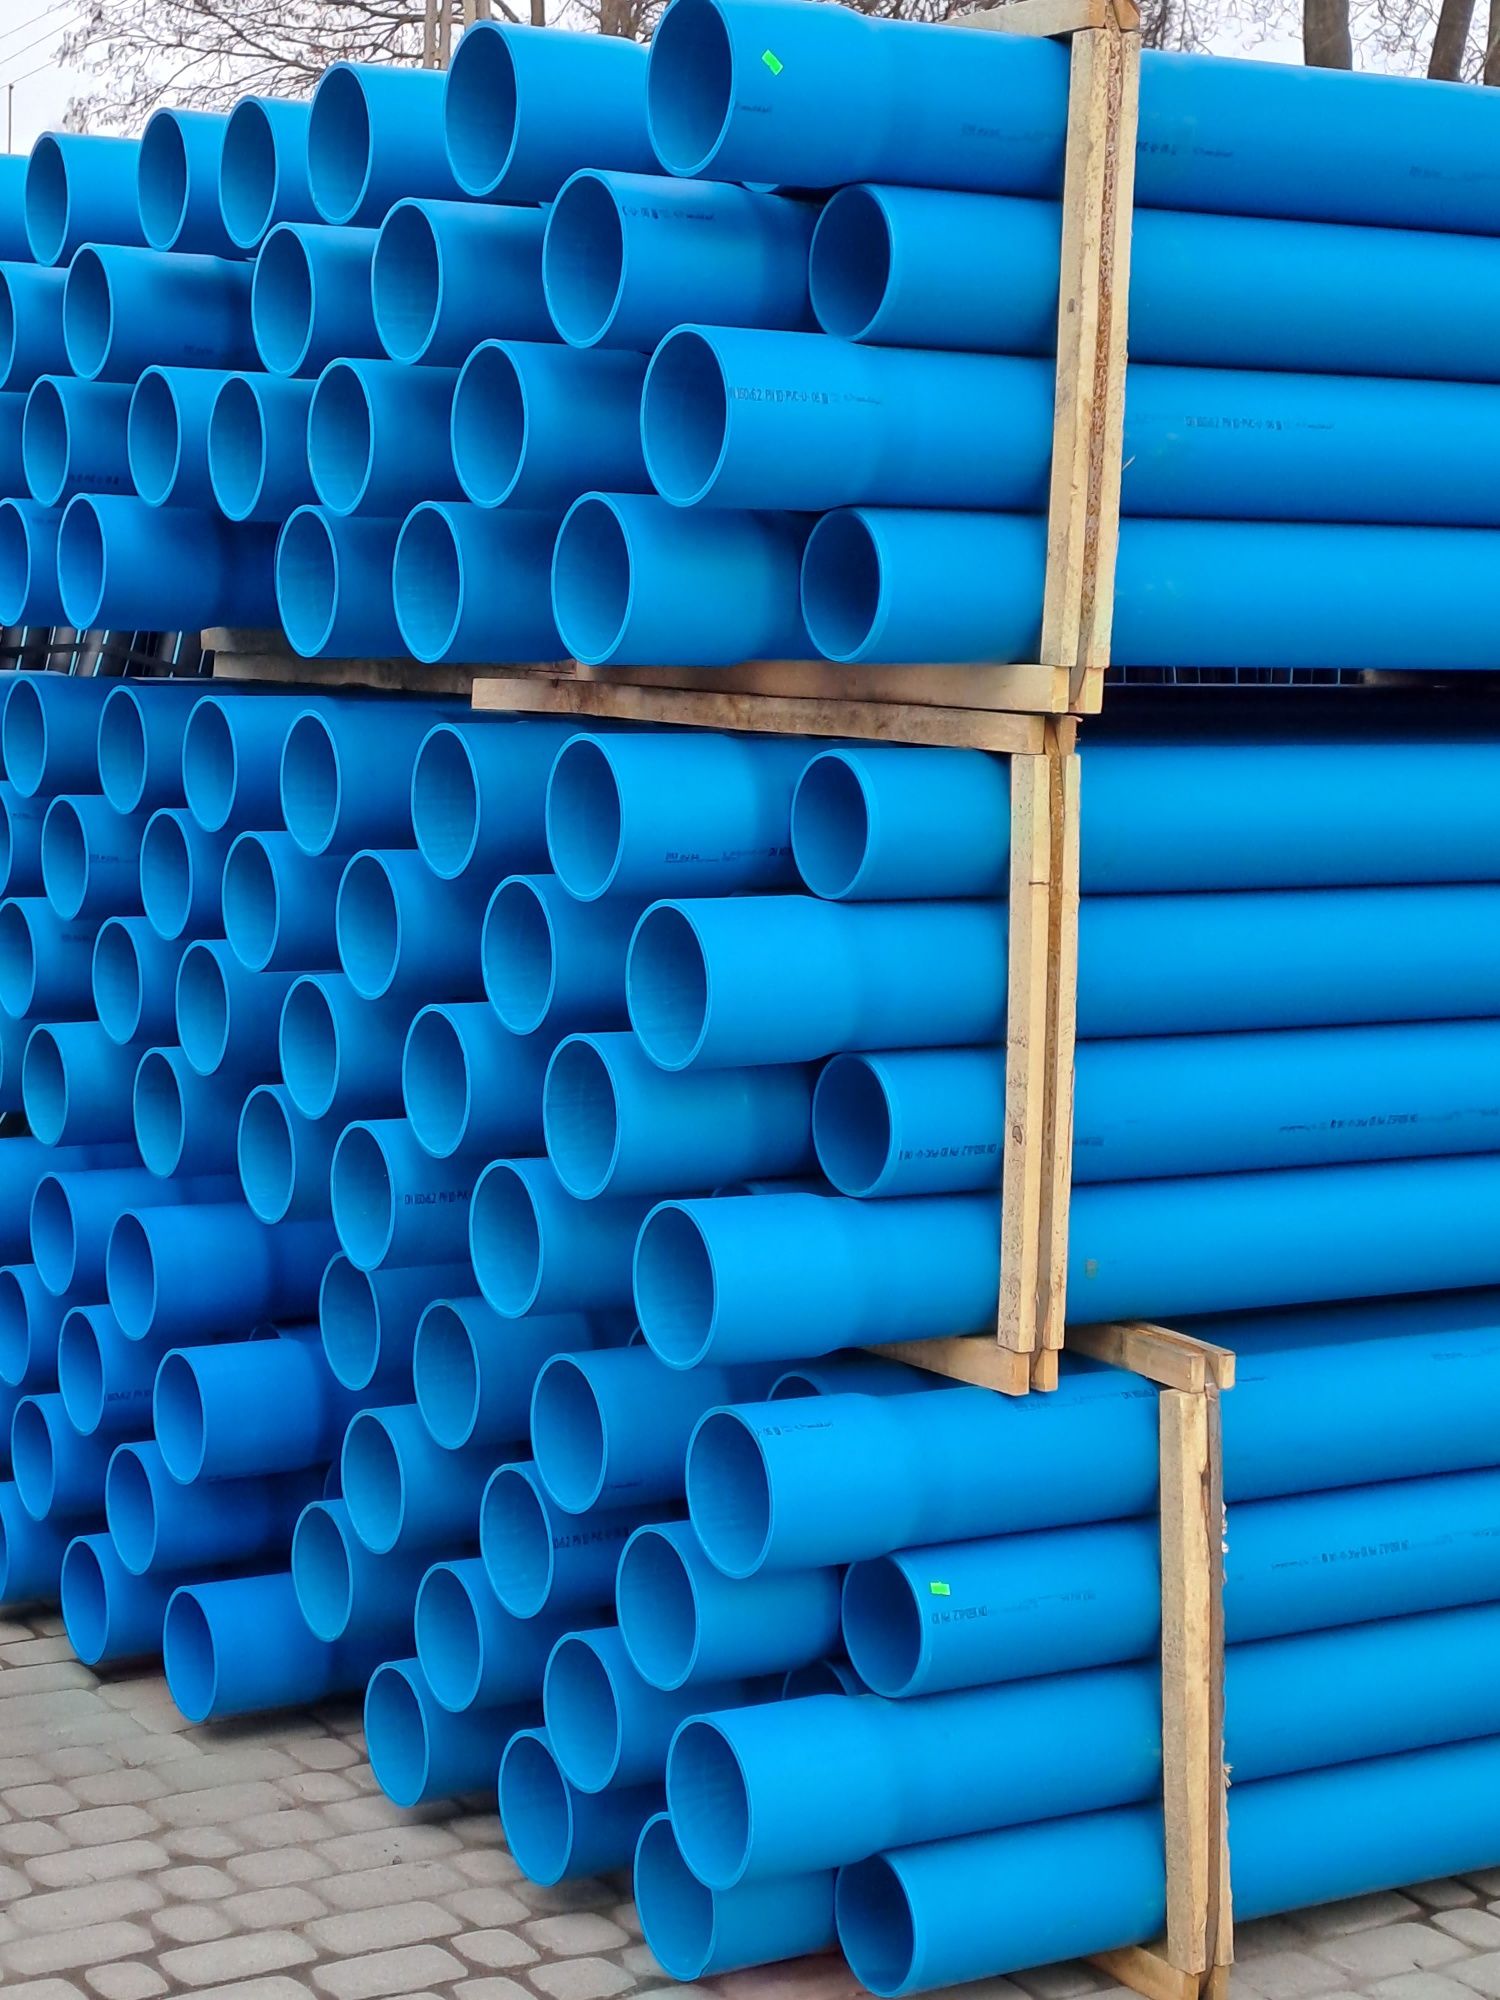 Rura do studni osłonowa PVC 125 niebieska -3m